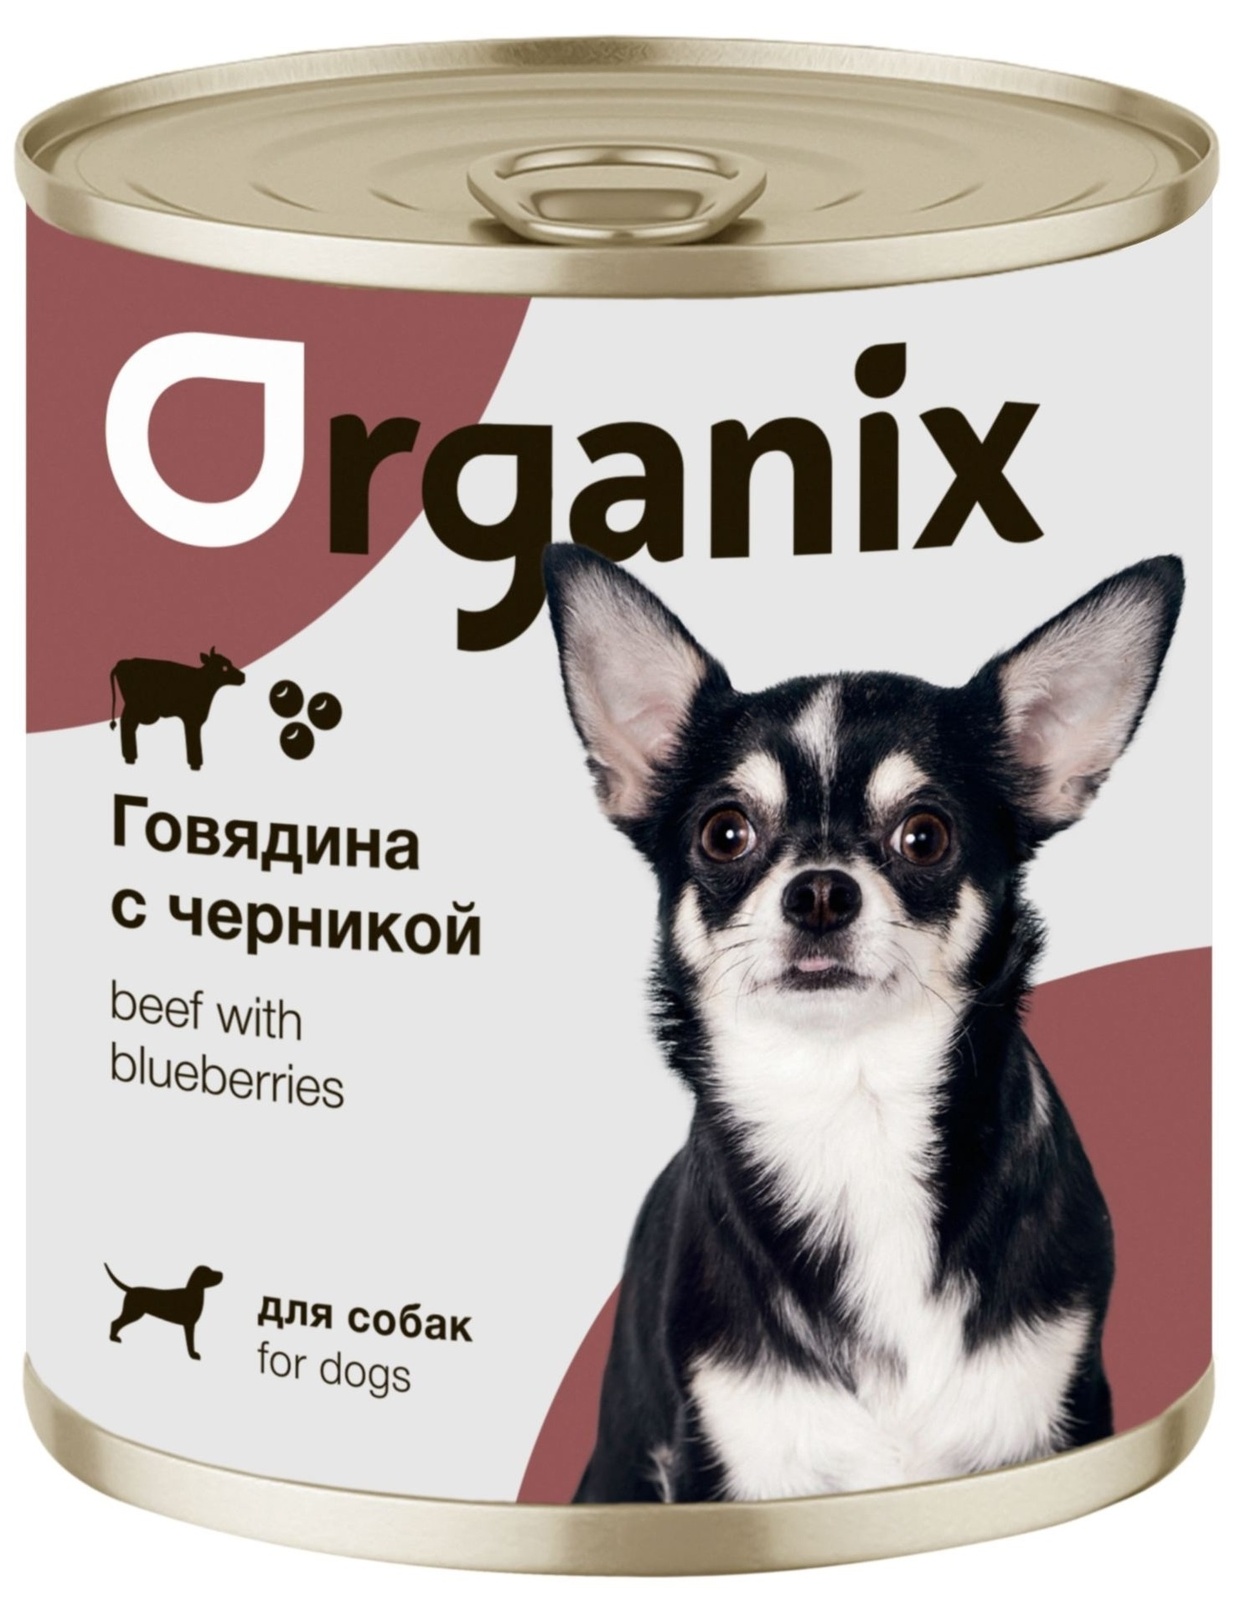 Organix консервы Organix консервы для собак Заливное из говядины с черникой (400 г) 42923